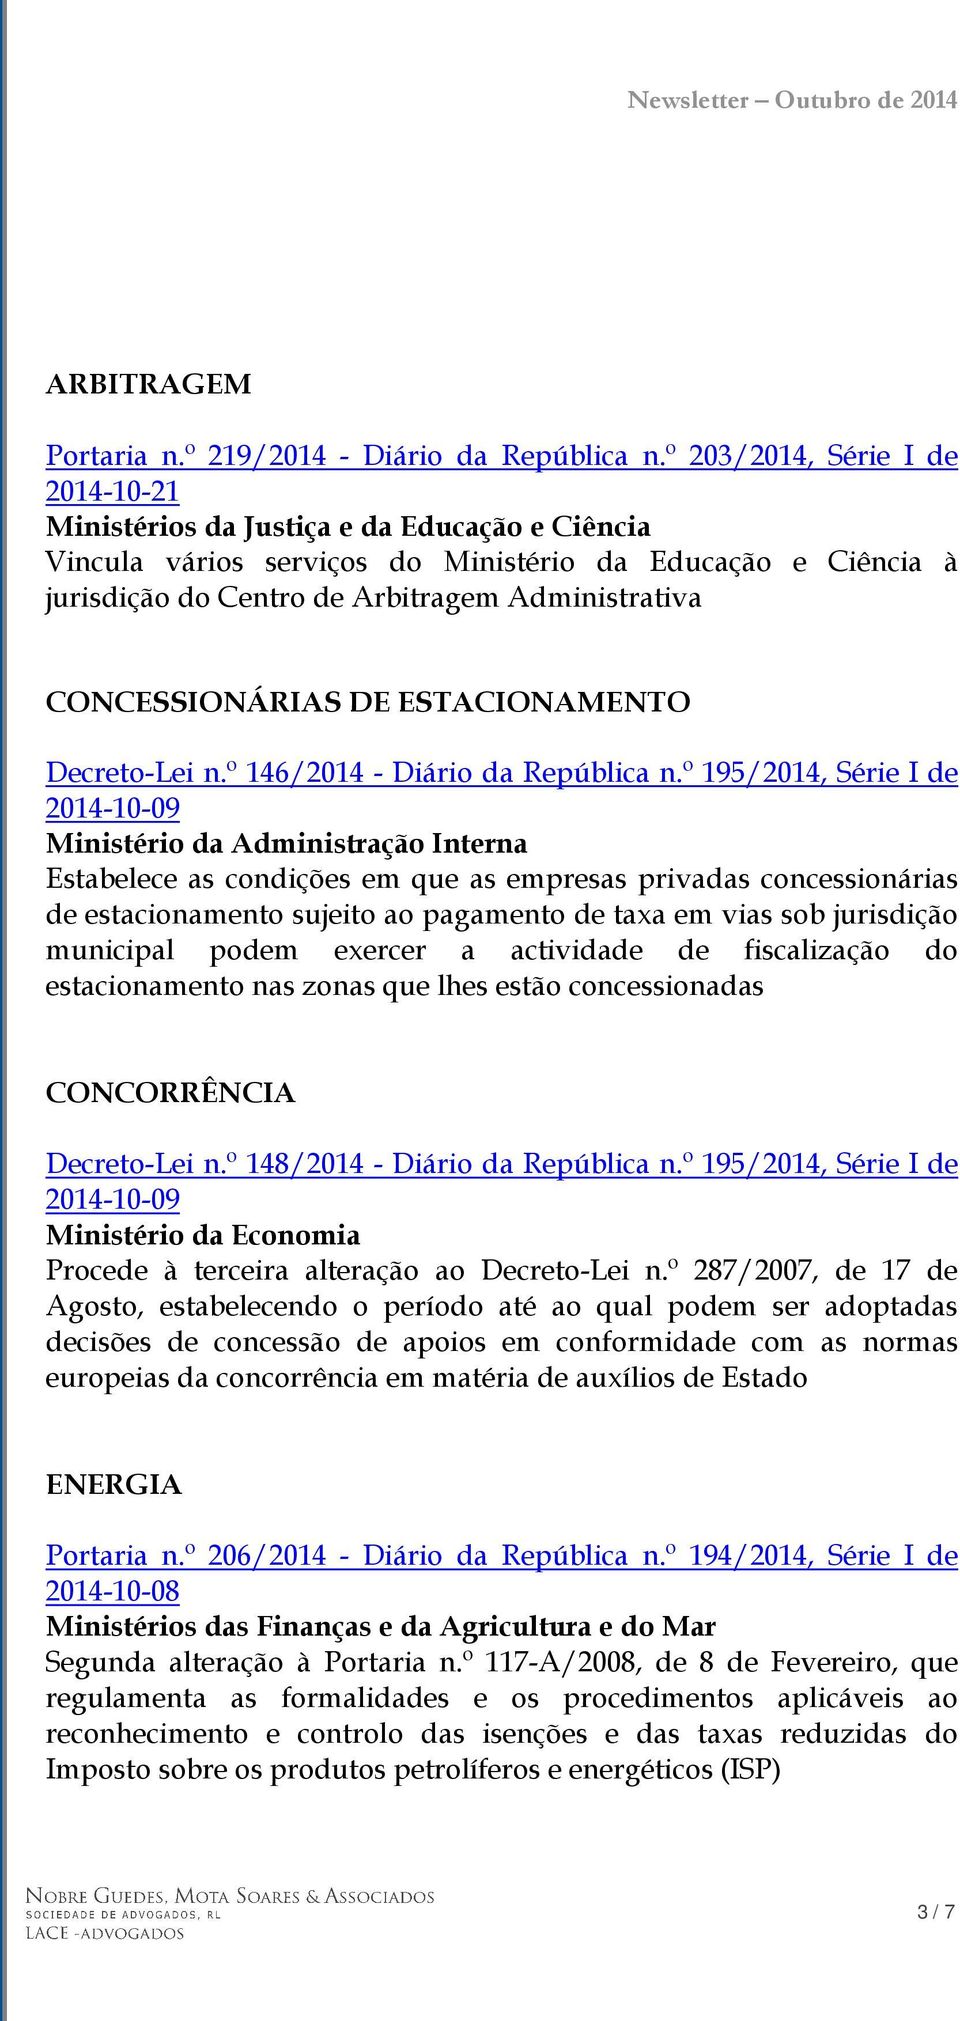 CONCESSIONÁRIAS DE ESTACIONAMENTO Decreto-Lei n.º 146/2014 - Diário da República n.